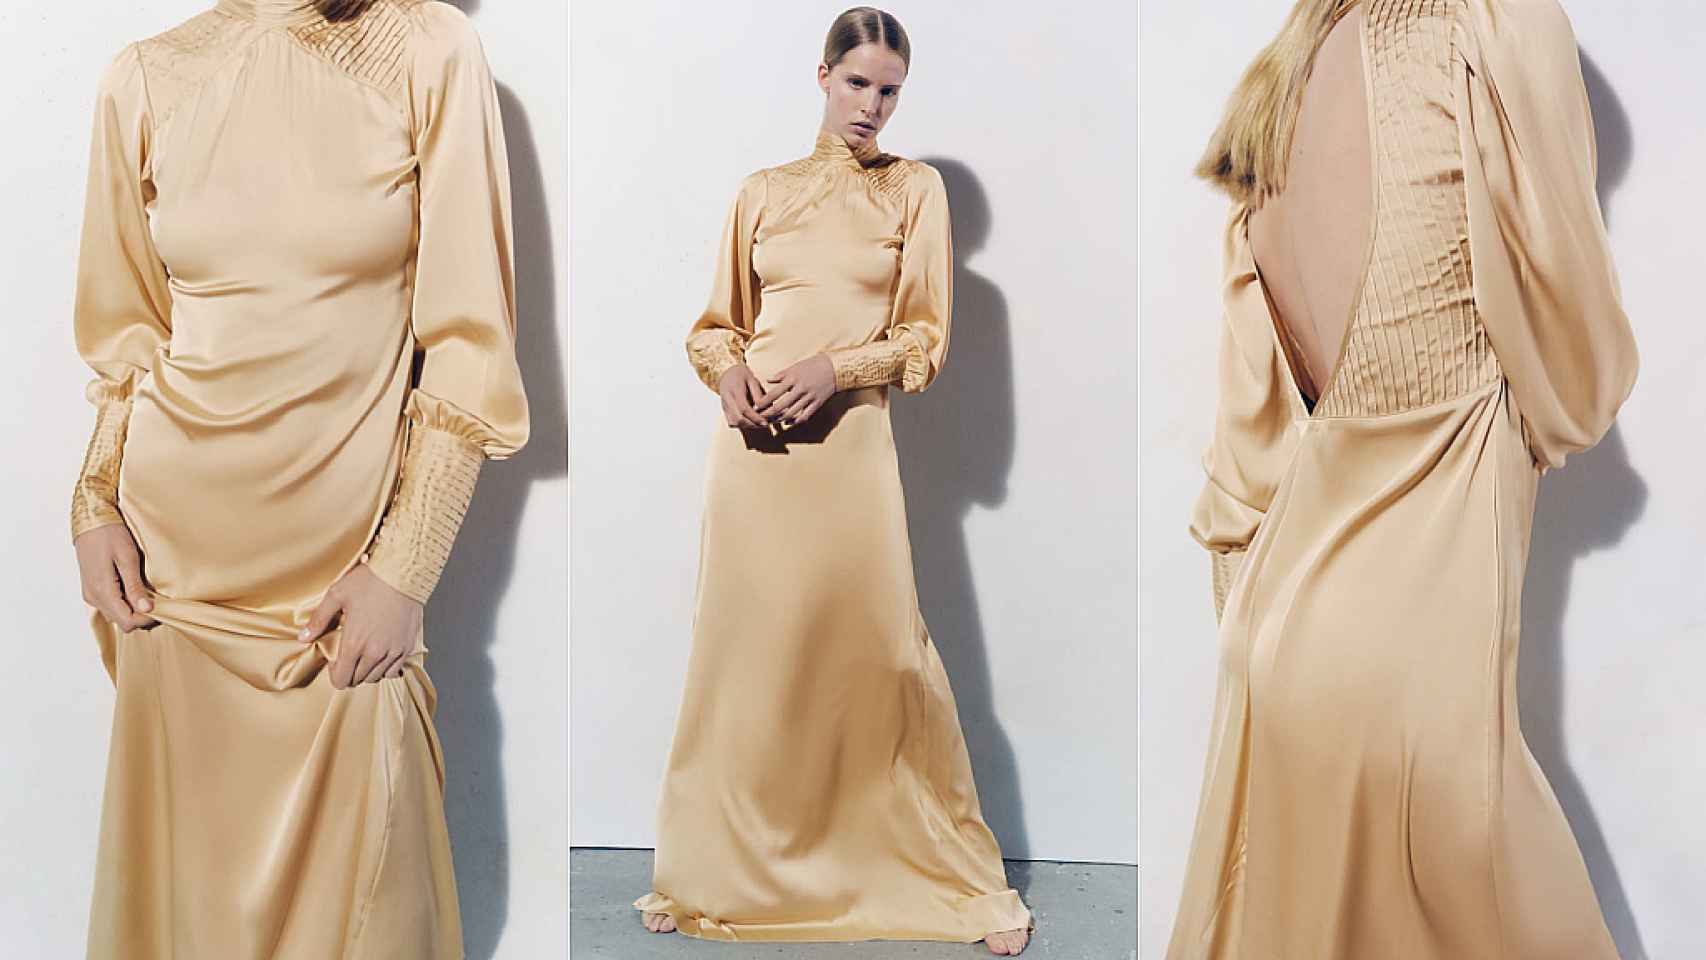 Zara lanza una colección para novias inspirada en los años 20